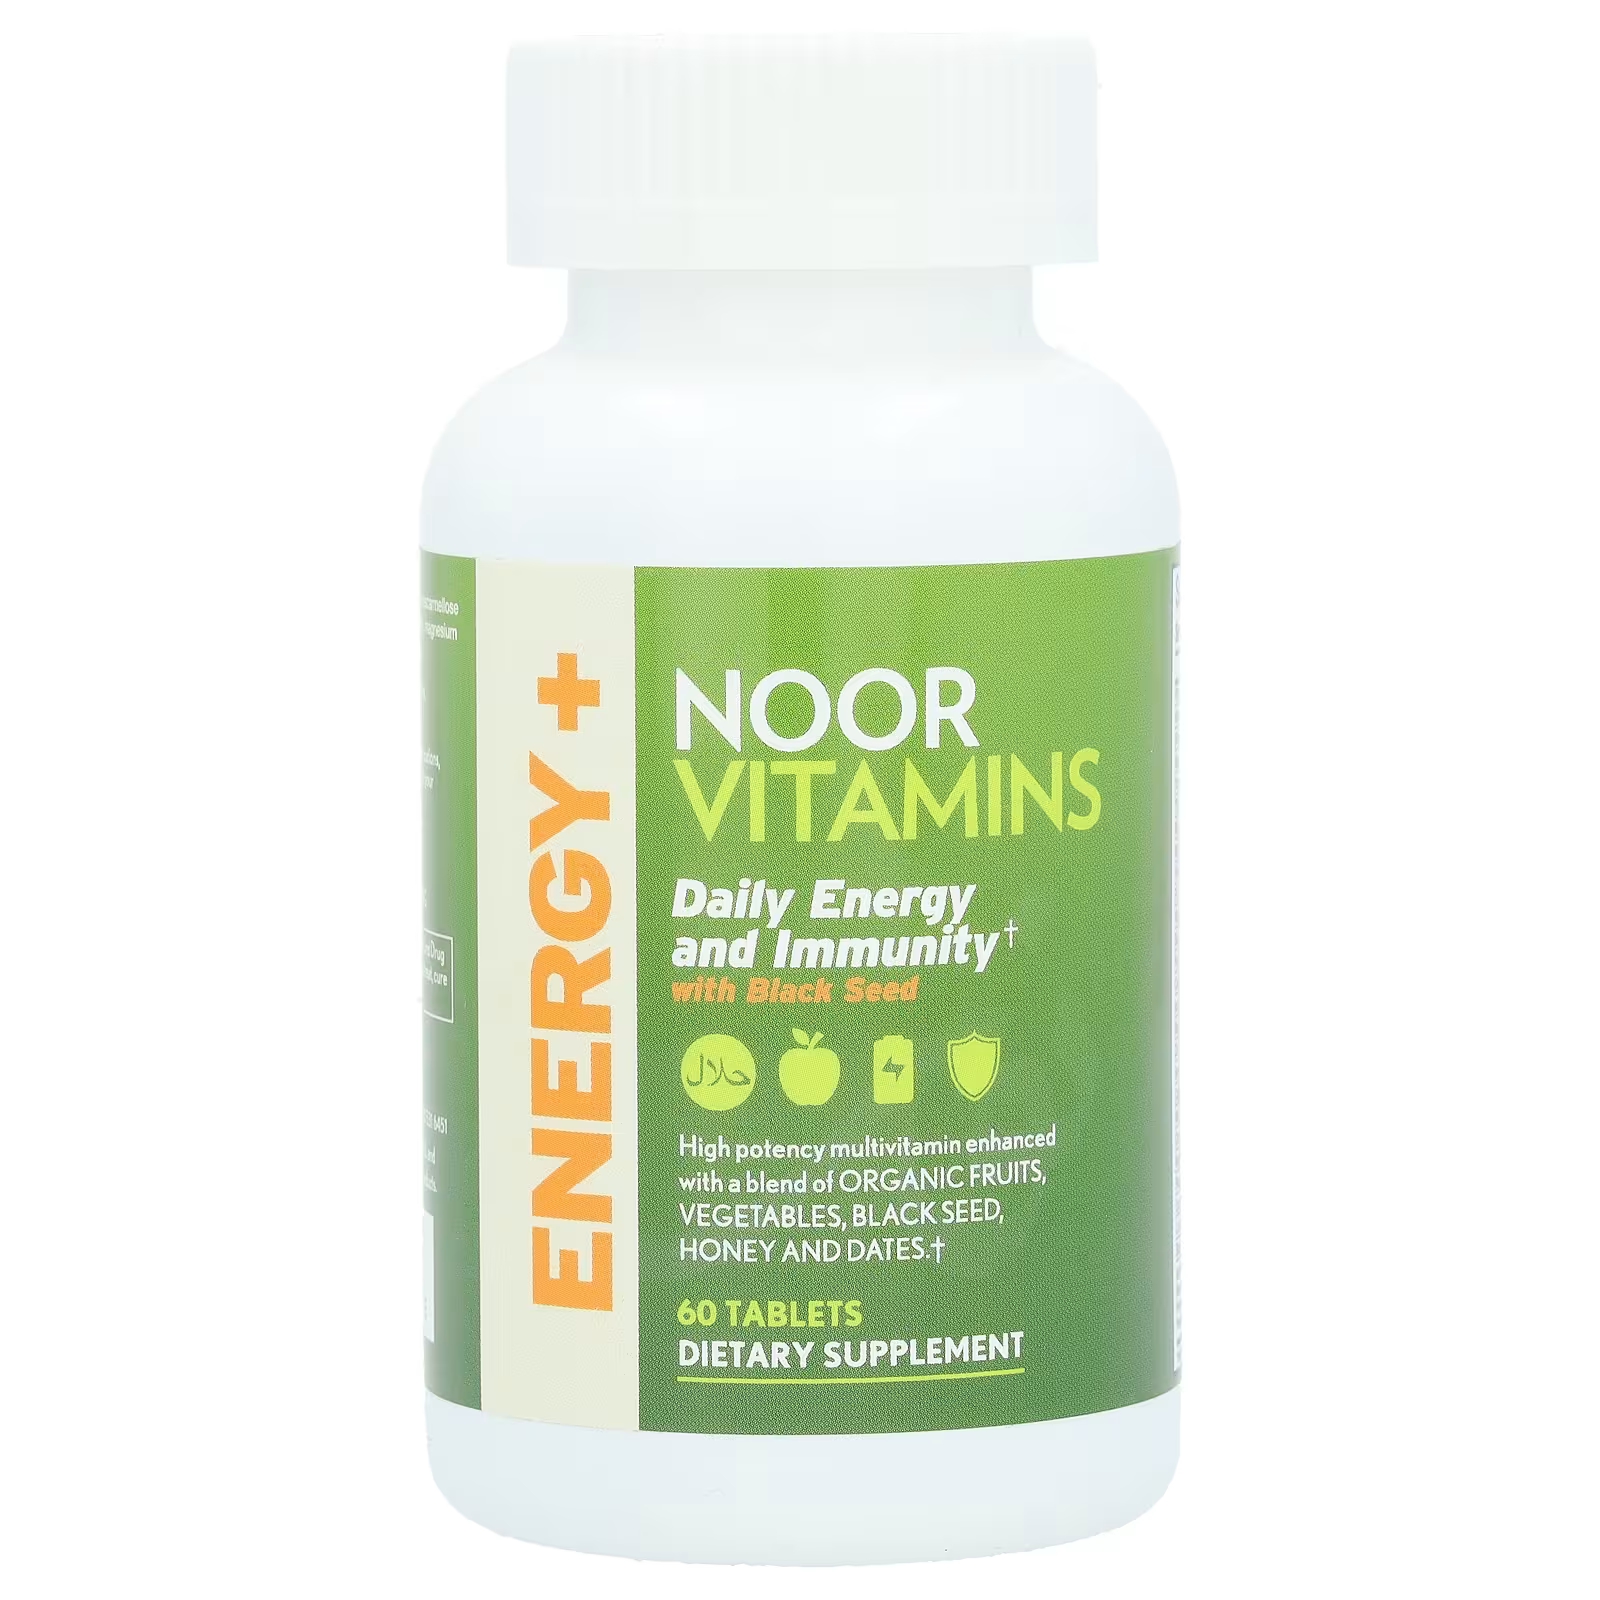 Витамины Noor Vitamins энергия и иммунитет с черным семенем, 60 таблеток noor витамины мультивитамины и минералы 60 таблеток noor vitamins